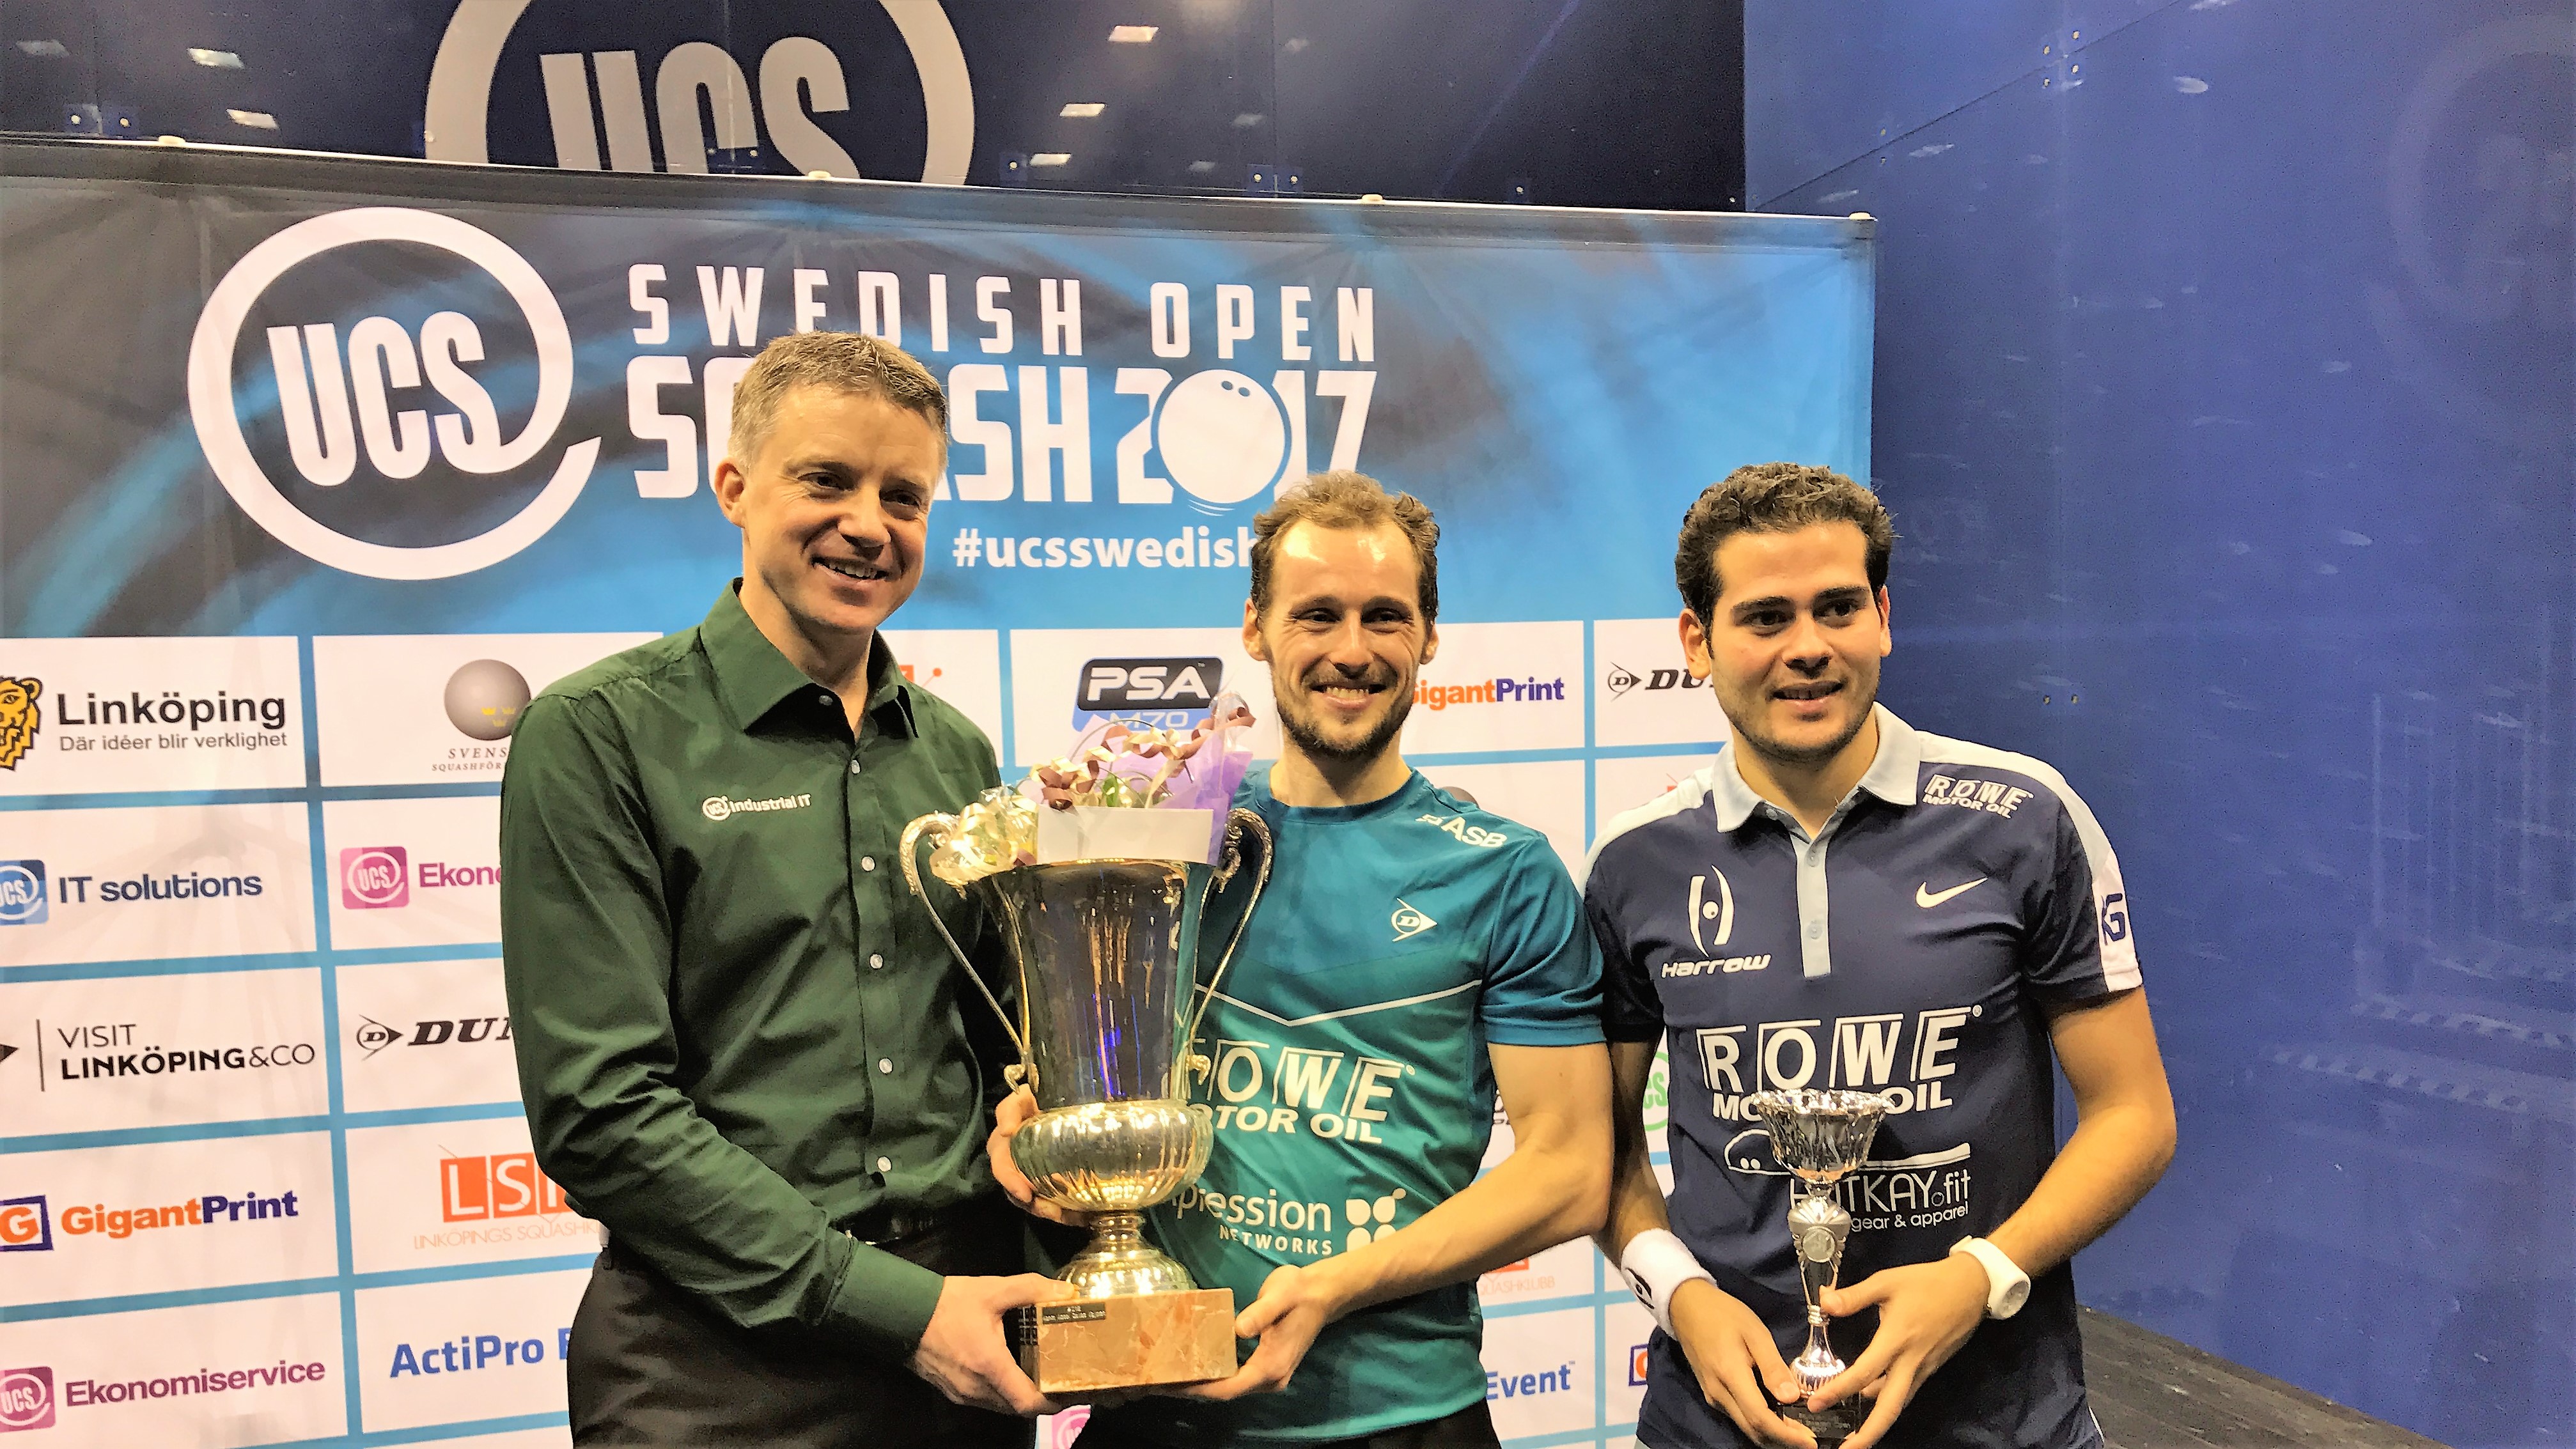 UCS Swedish Open Squash 2018